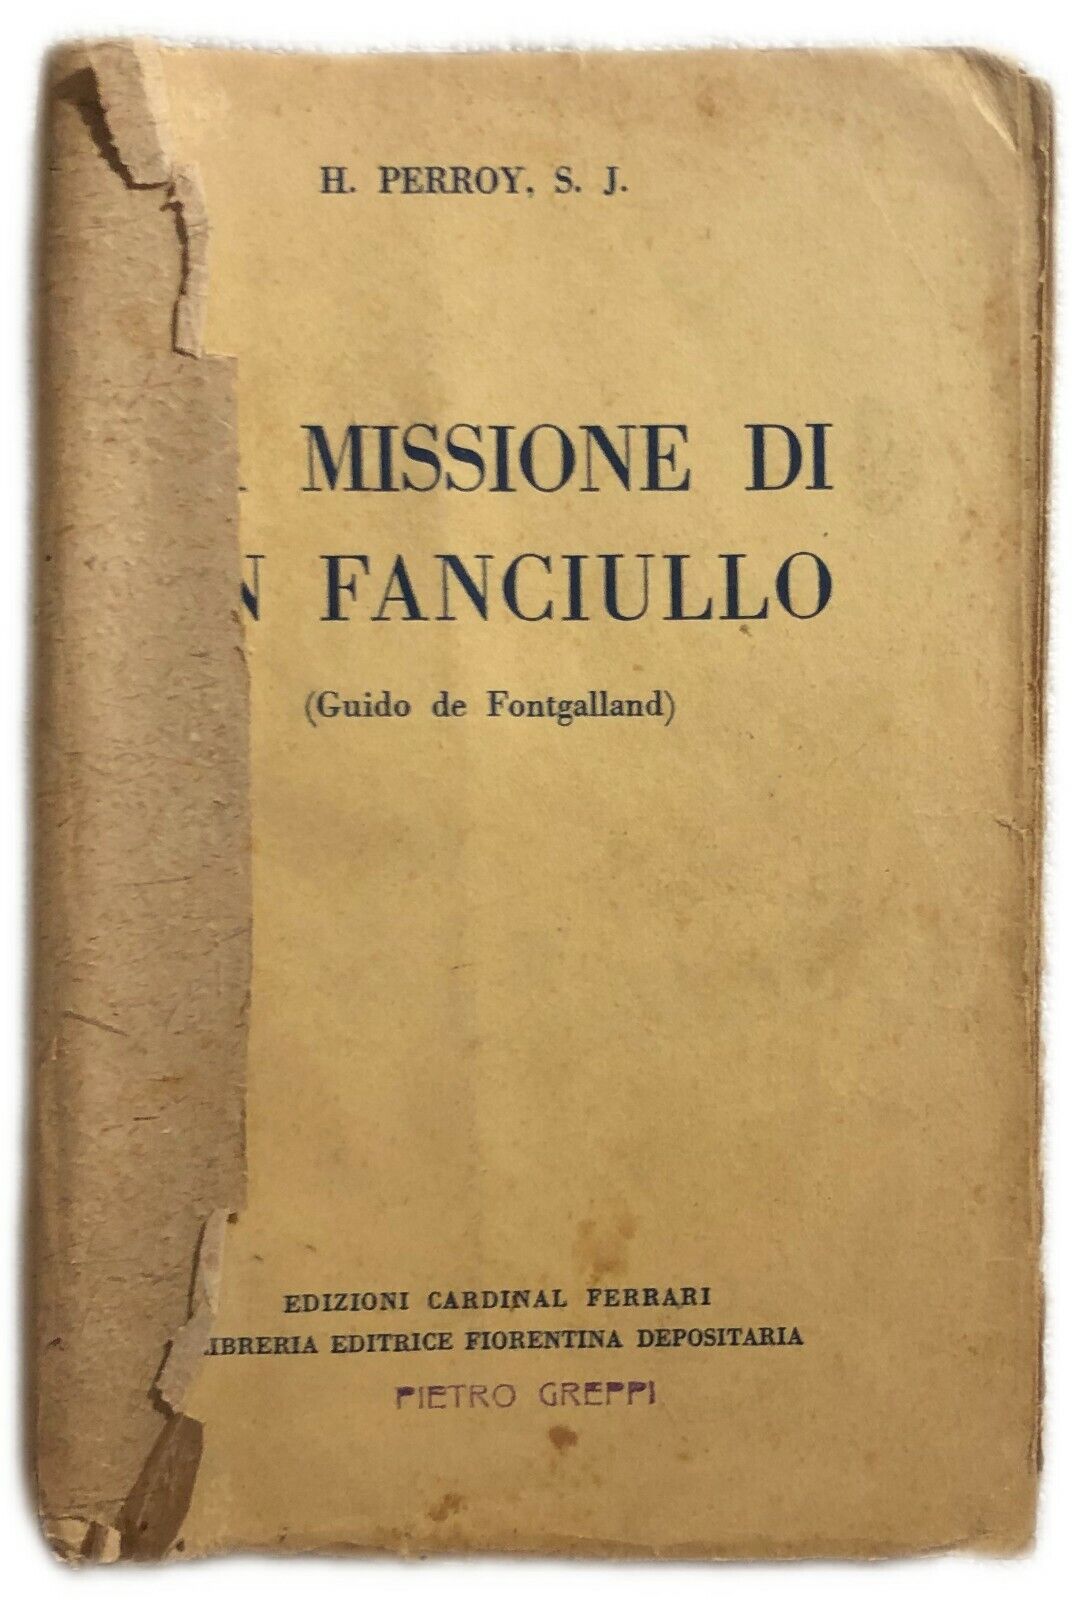 La missione di un fanciullo di H. Perroy, S.j.,  1931,  Edizioni Cardinal Ferrar